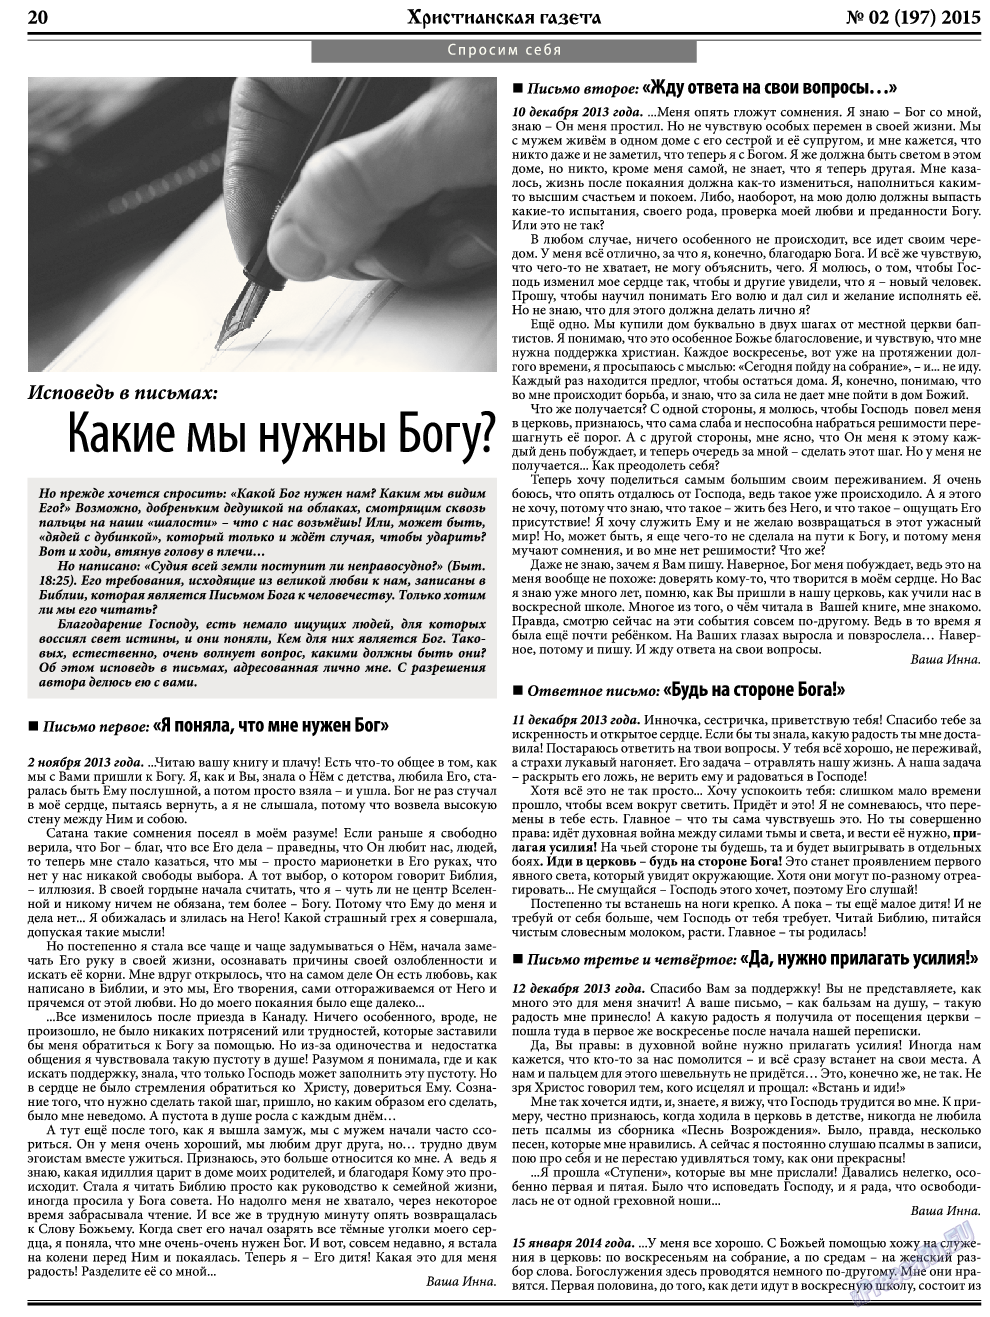 Христианская газета, газета. 2015 №2 стр.28